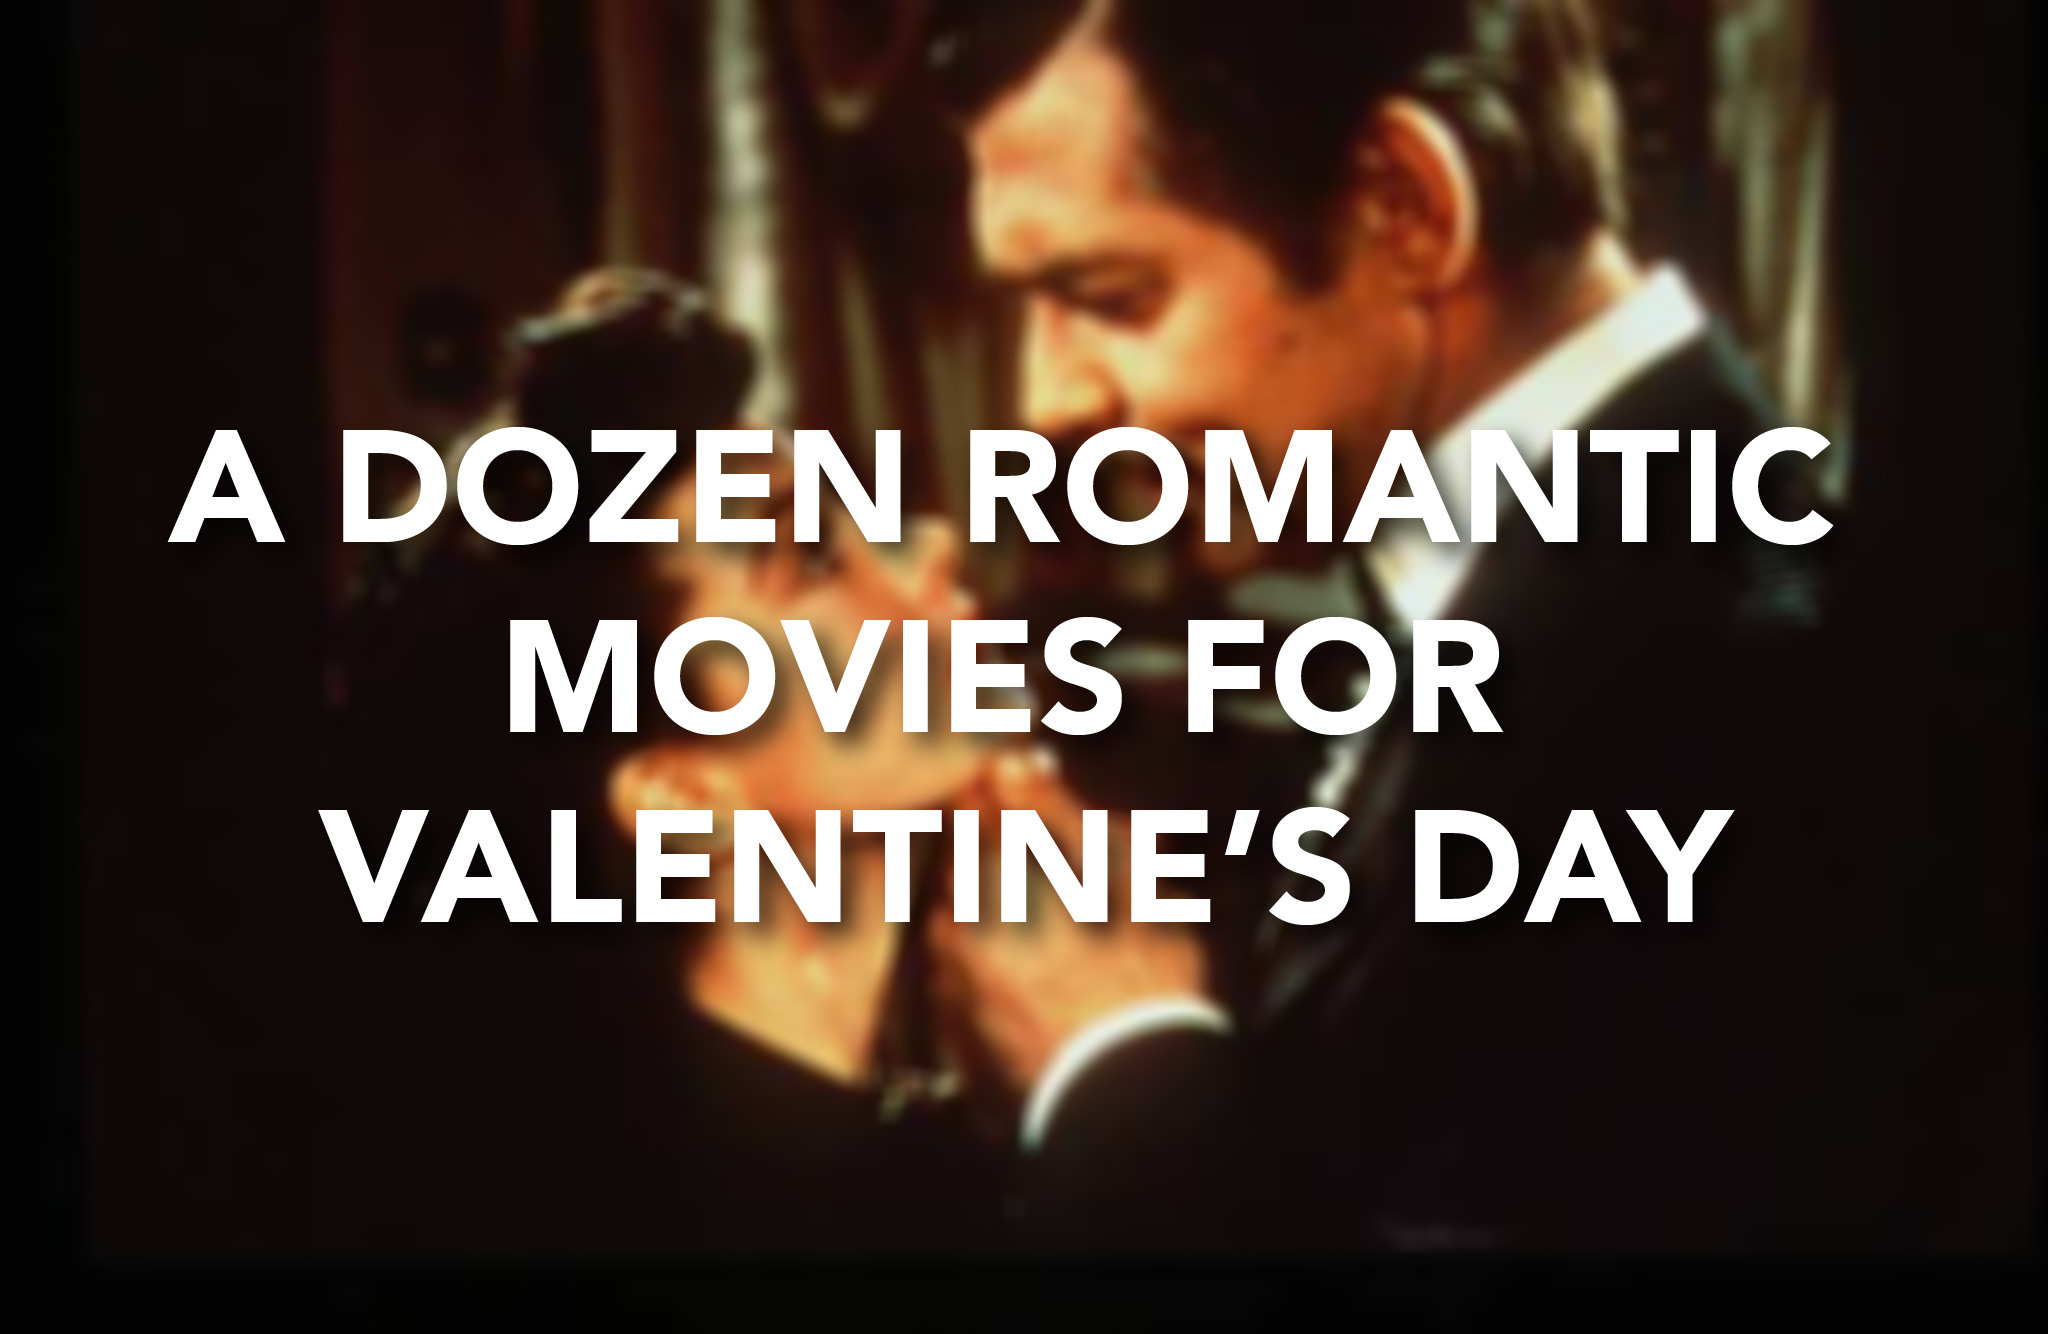 A dozen romantic movies for Valentine's Day